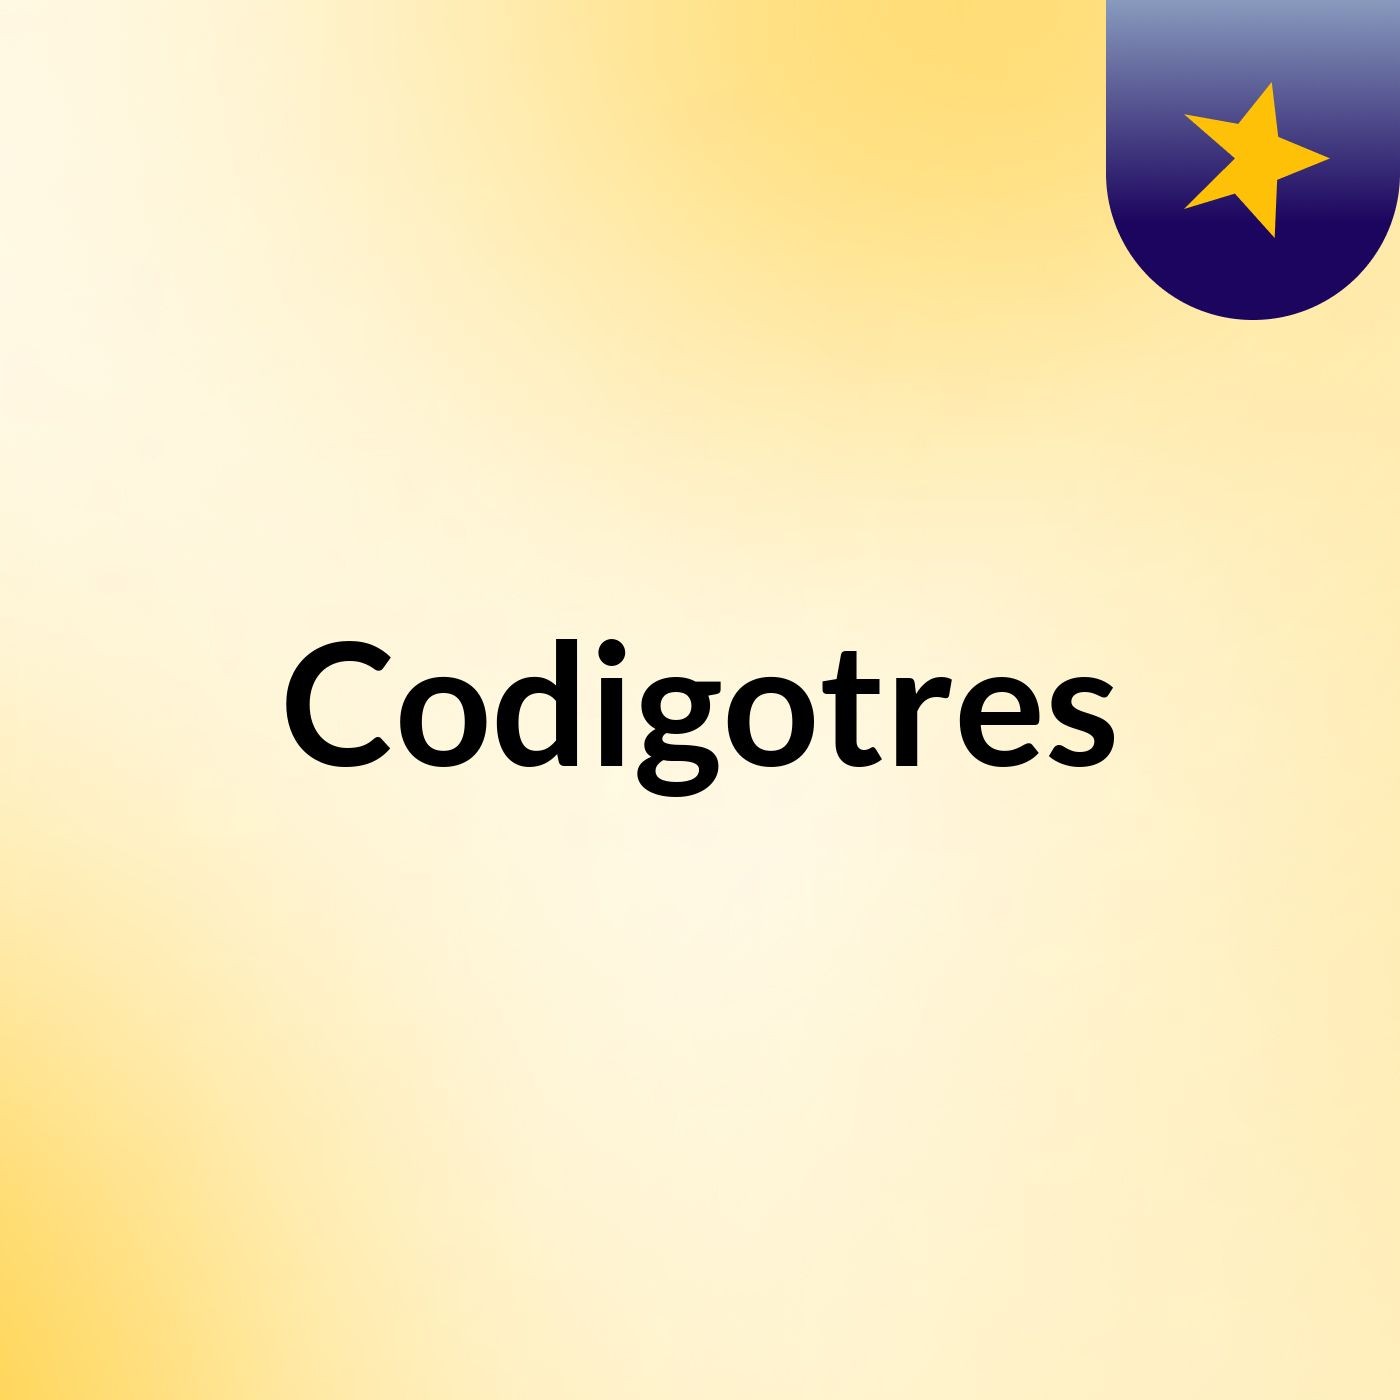 Codigotres